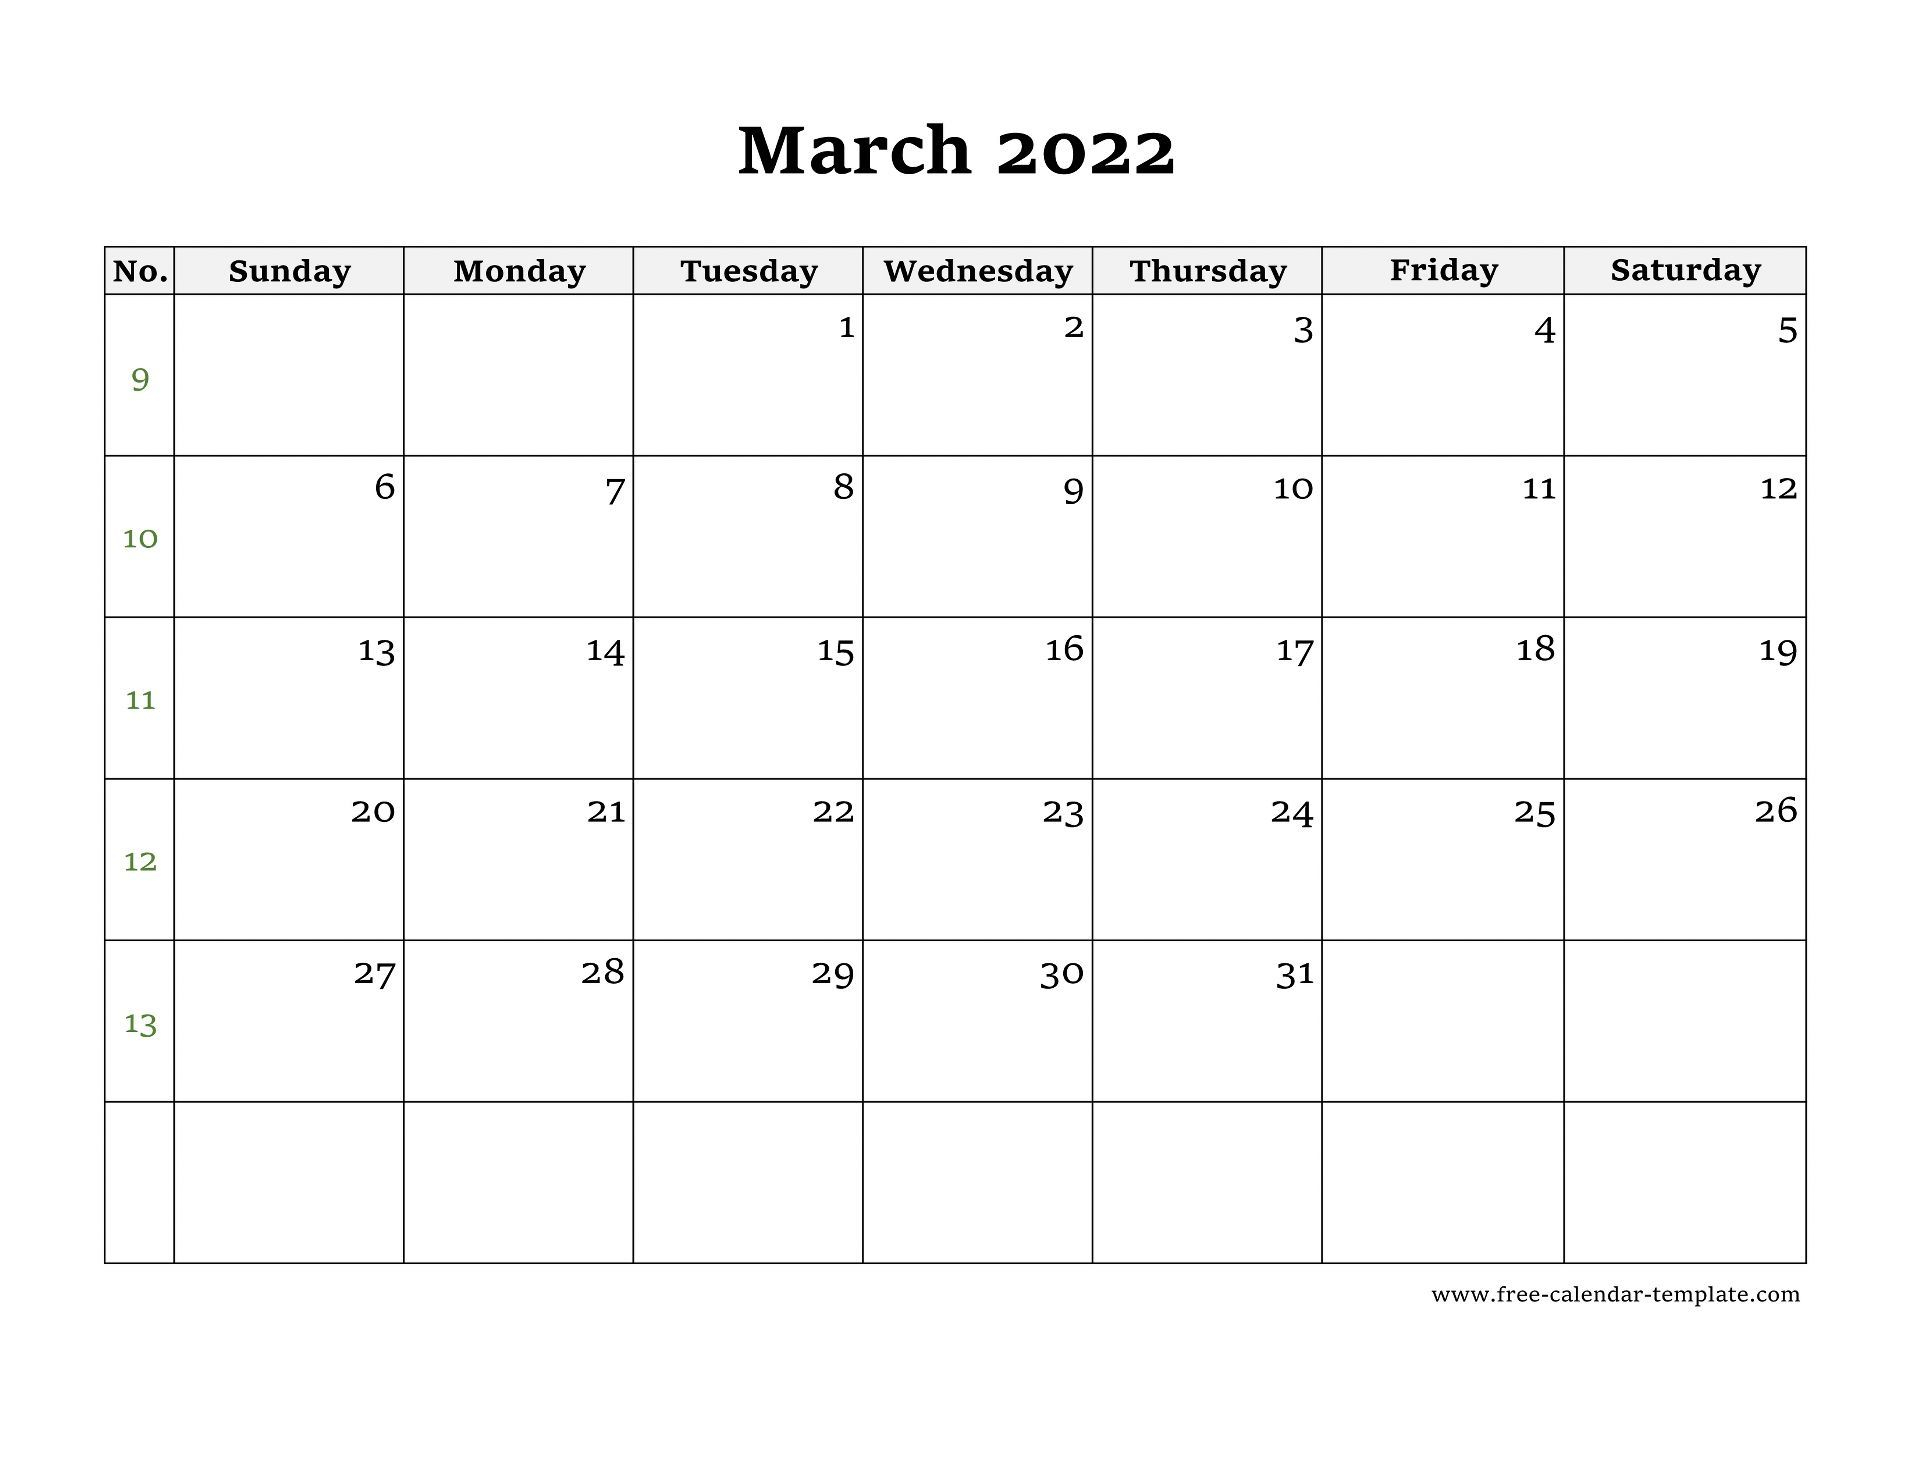 March 2022 Free Calendar Tempplate | Free-Calendar